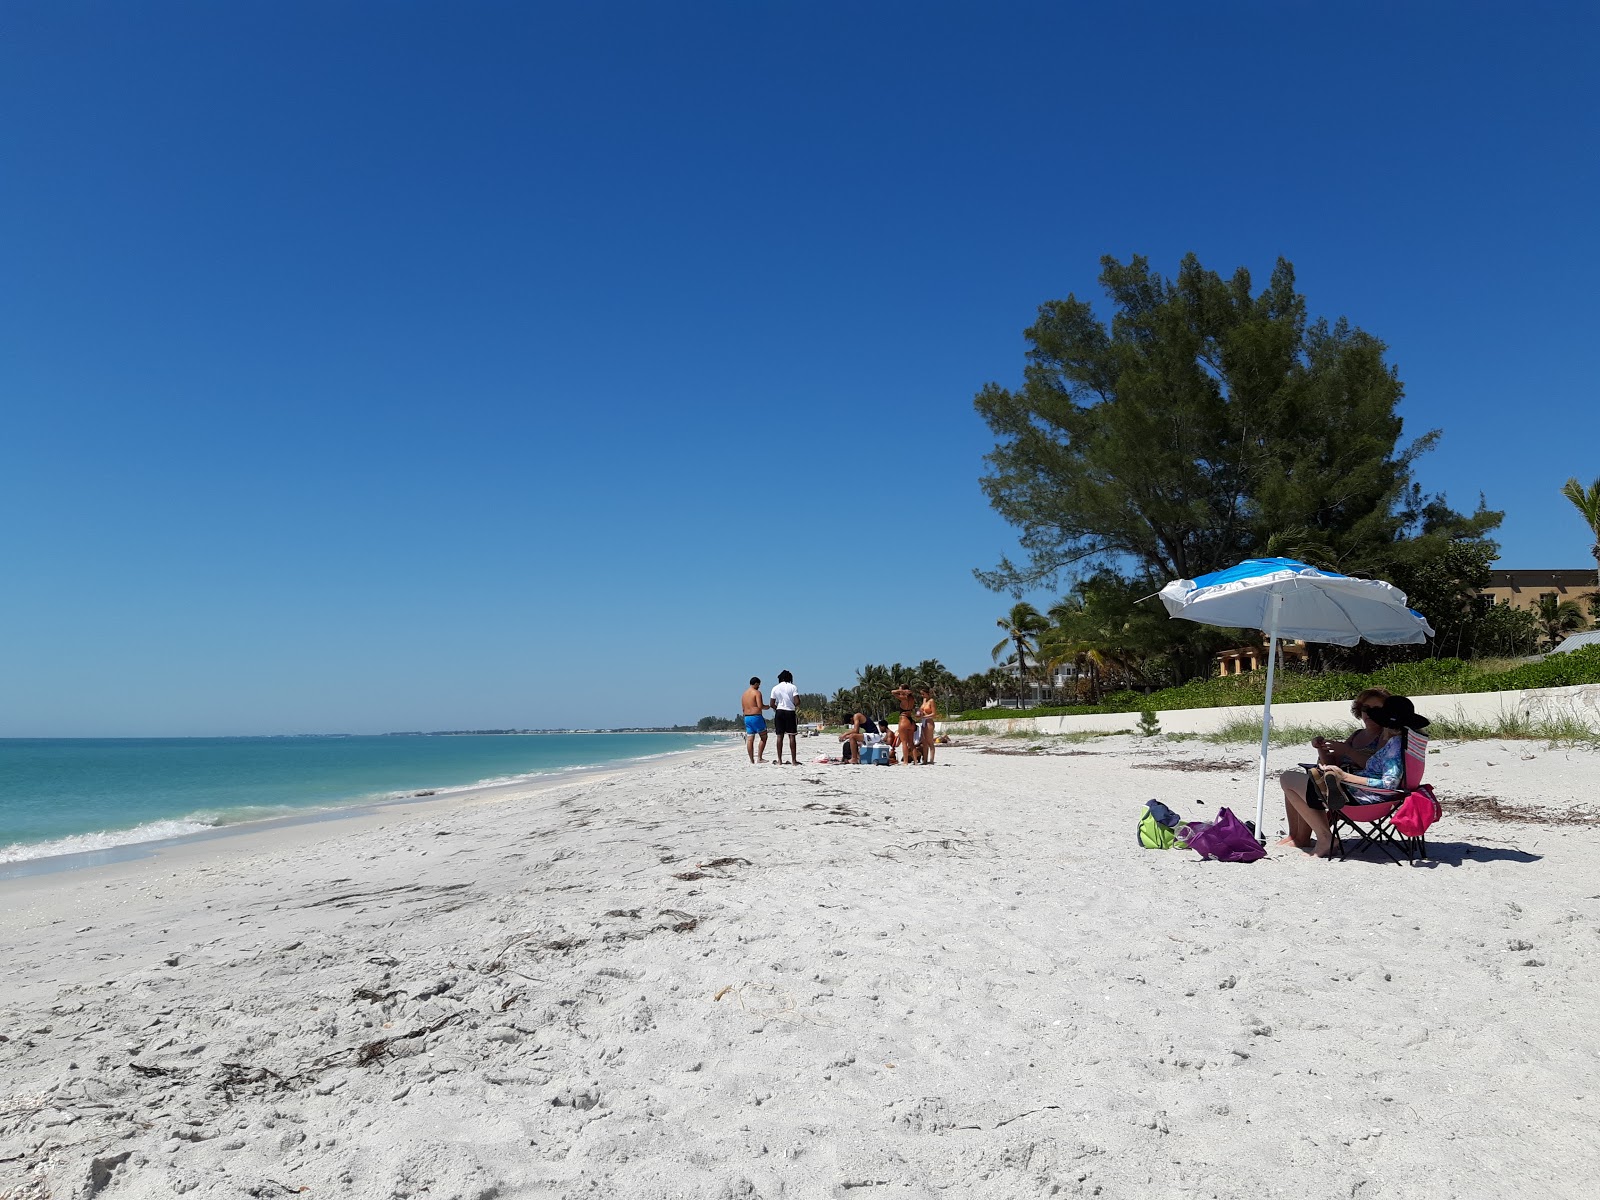 Photo de Gasparilla Island beach - endroit populaire parmi les connaisseurs de la détente